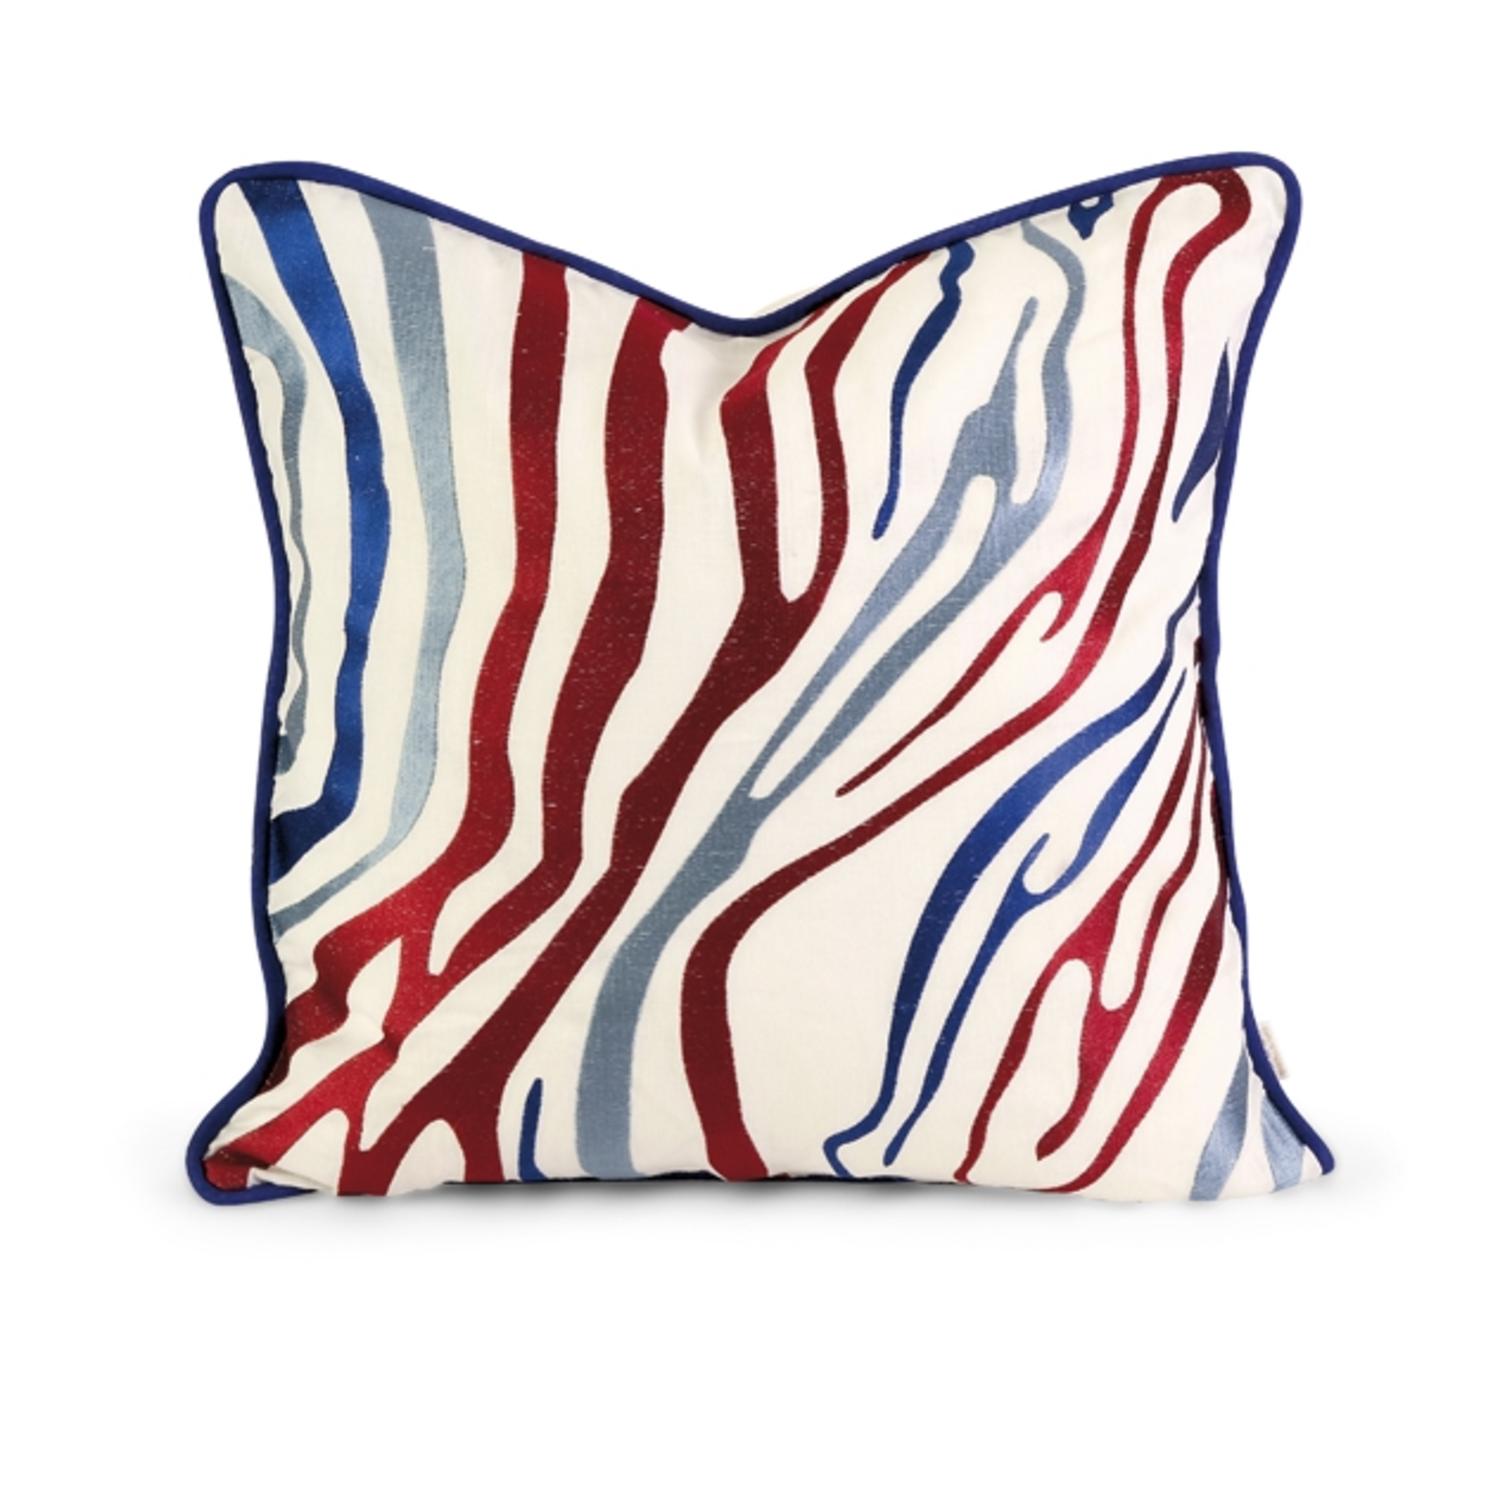 18" Decorative Multi-Colored Zebra Print Embroidered Down Linen ...